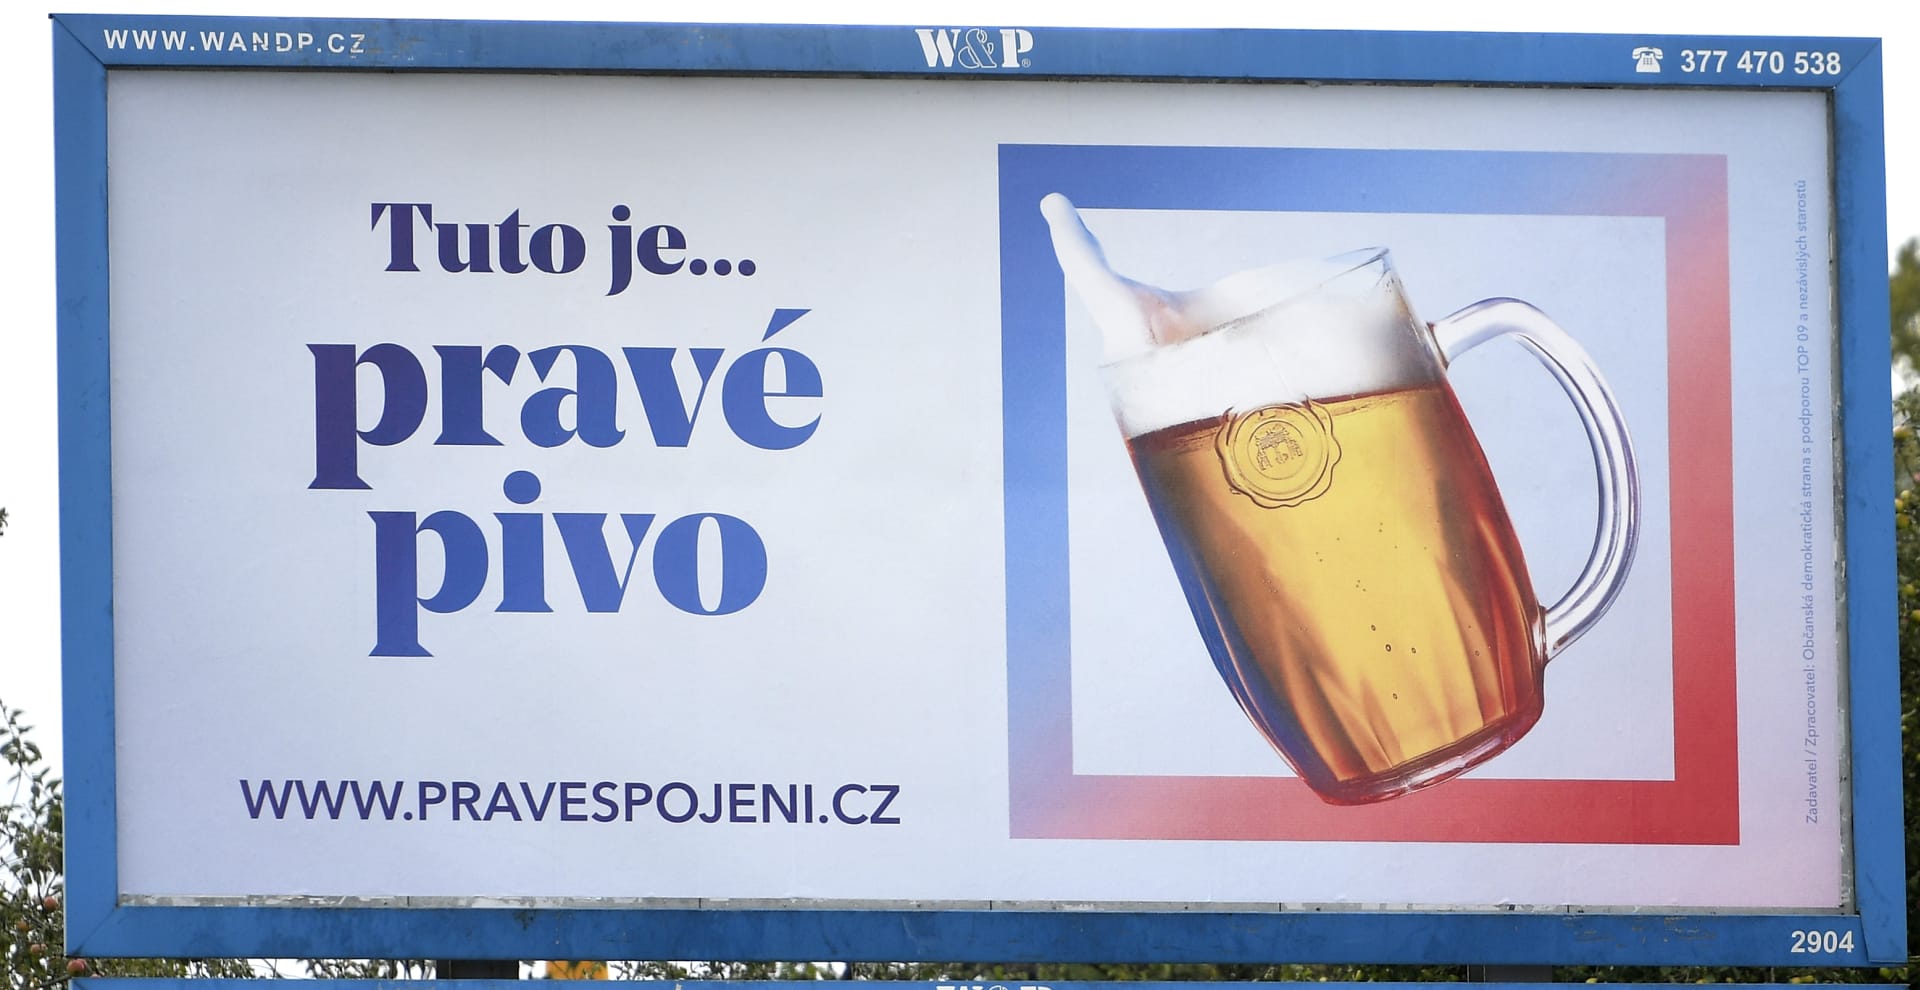 „Toto je pravé pivo“, objevilo se na některých billboardech v Plzeňském kraji. Na první pohled nelze vůbec poznat, zda jde o reklamu na Plzeňský prazdroj, či něco jiného. Při bližším zkoumání lze zjistit, že se jedná o předvolební kampaň ODS a TOP 09, kterou se strany rozhodly pojmout jako spojení pravice. Na dalším ze svých místních plakátů pak vkládají panorama Šumavy se sloganem „Toto je pravá Šumava“.